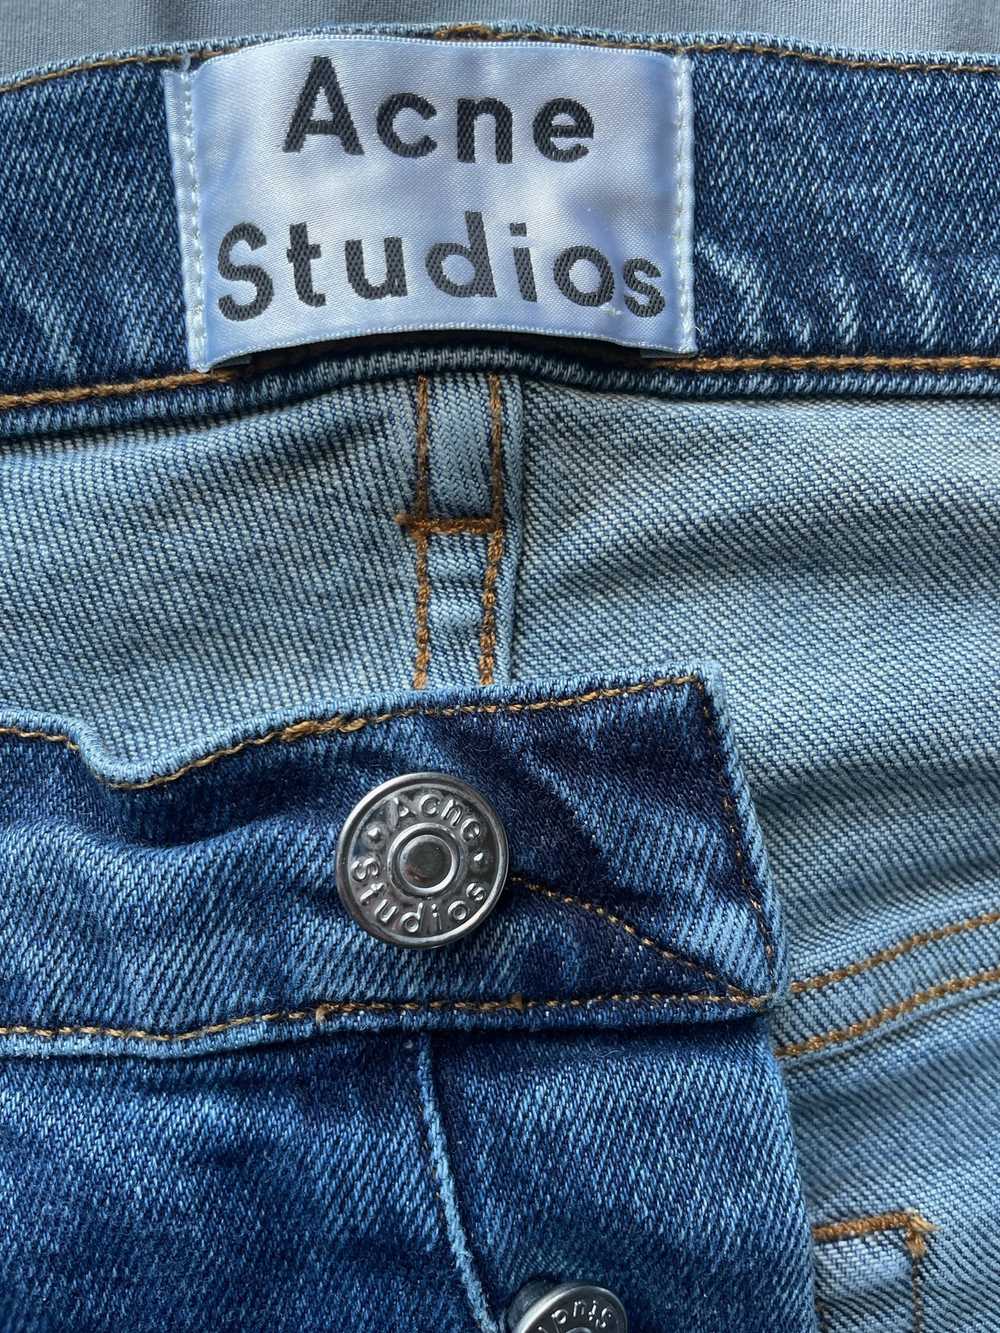 Acne Studios Acne Studios Town STR Vintage Jeans - image 3